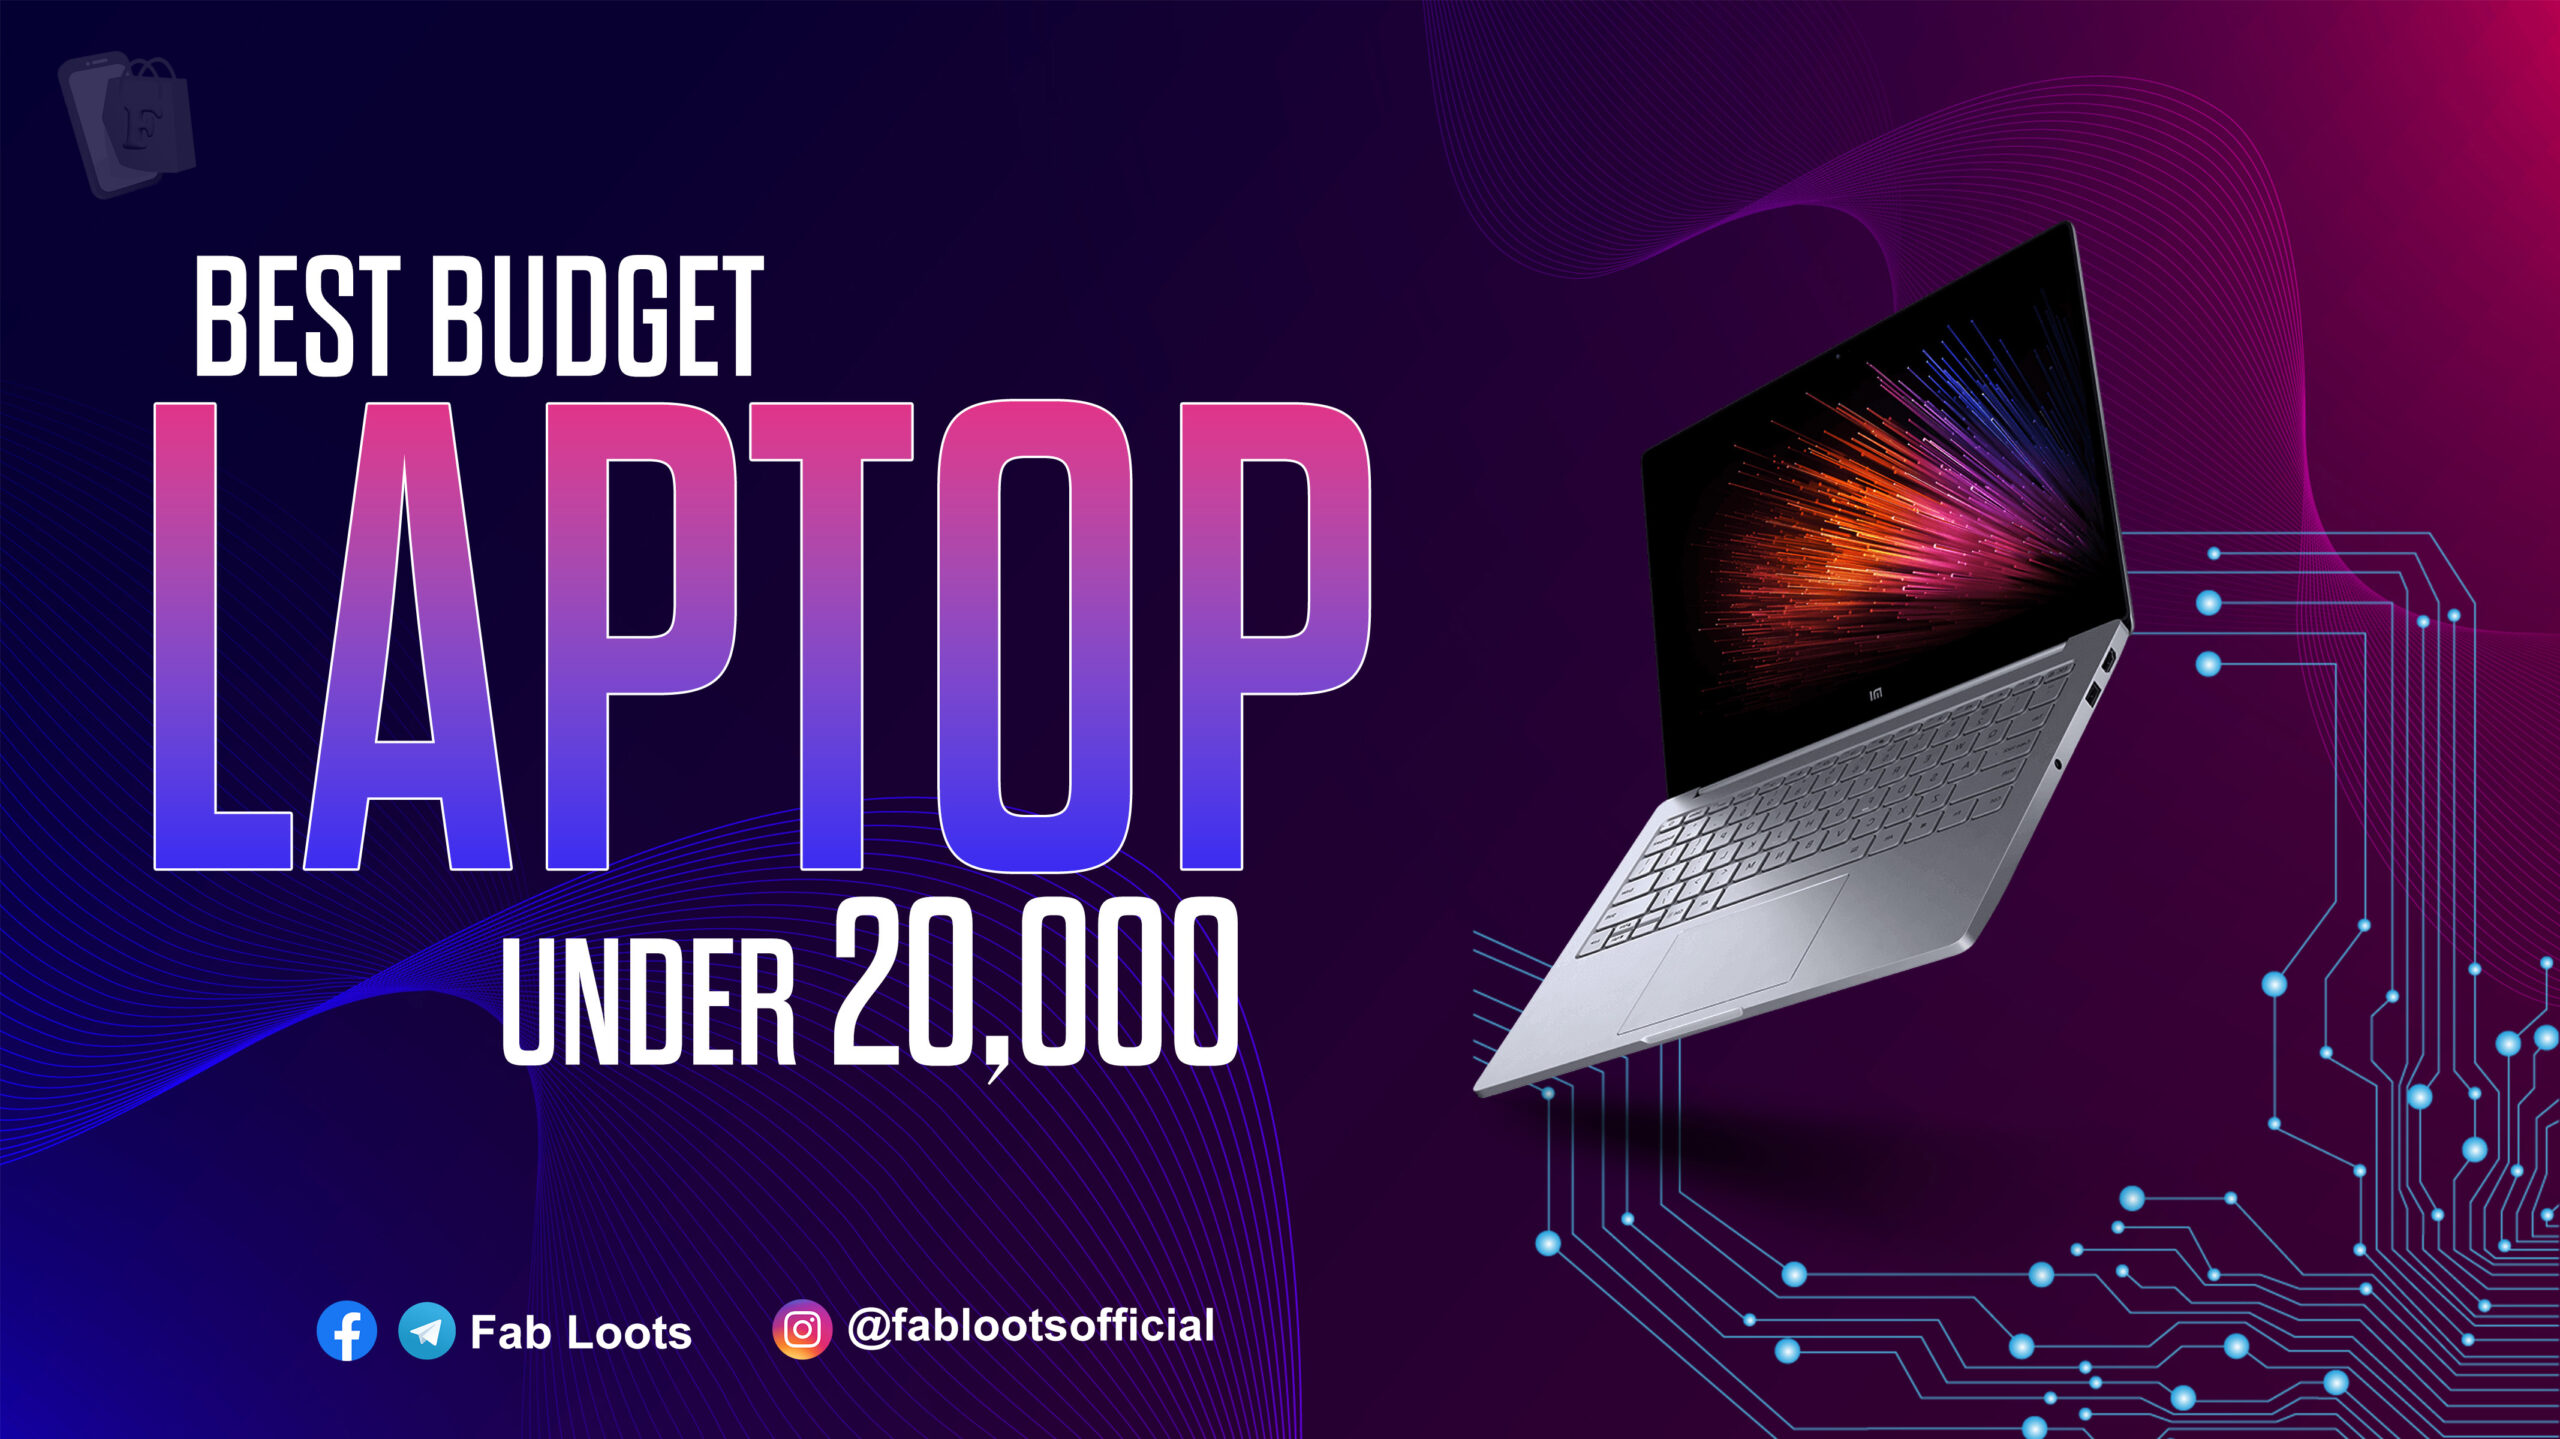 Best Budget Laptop under 20,000